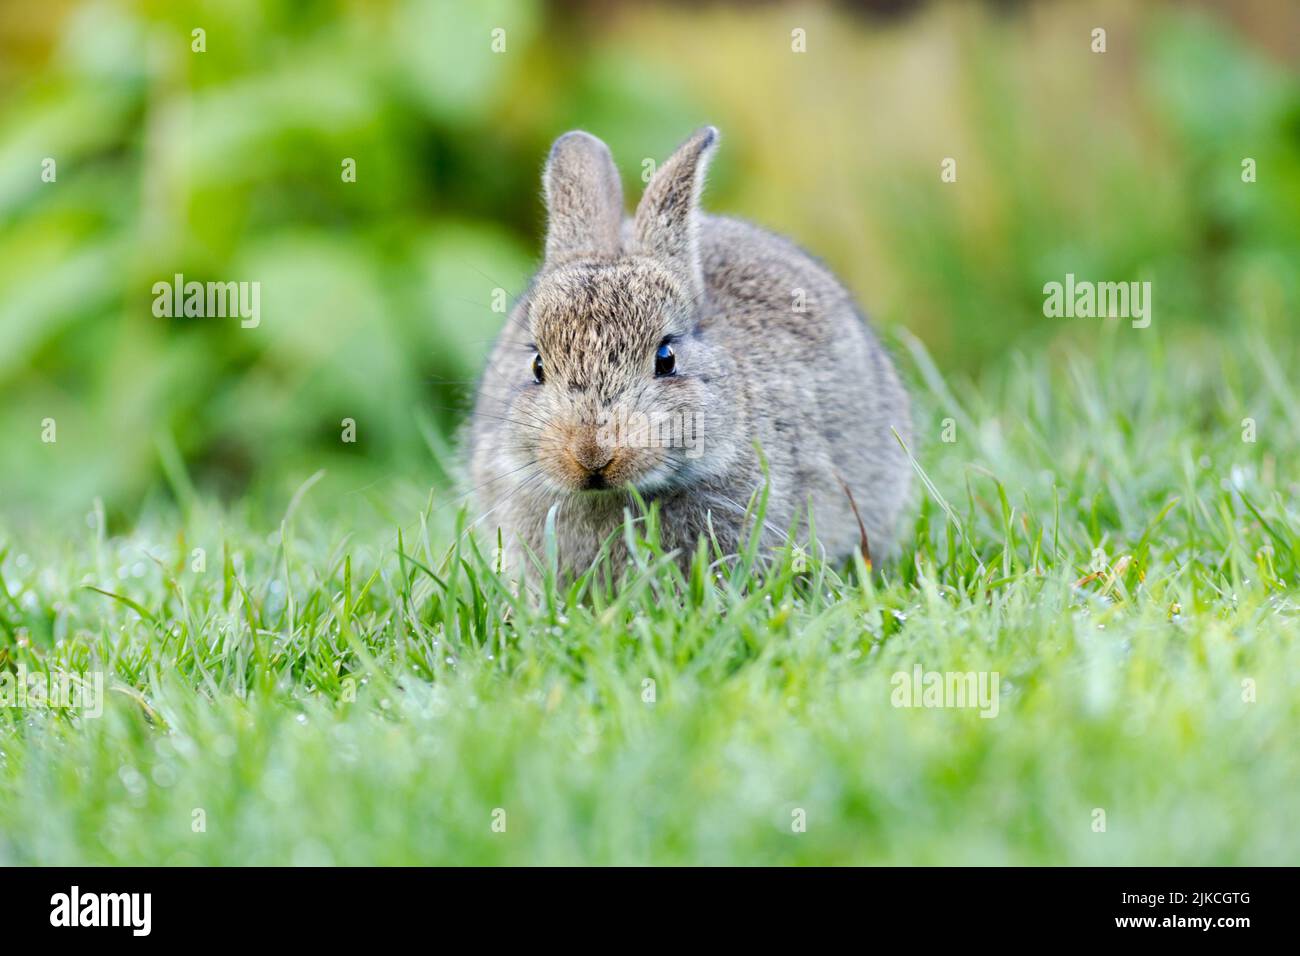 Wildes Kaninchen, lateinischer Name Oryctolagus cuniculus, grast auf einem Gartenrasen Stockfoto